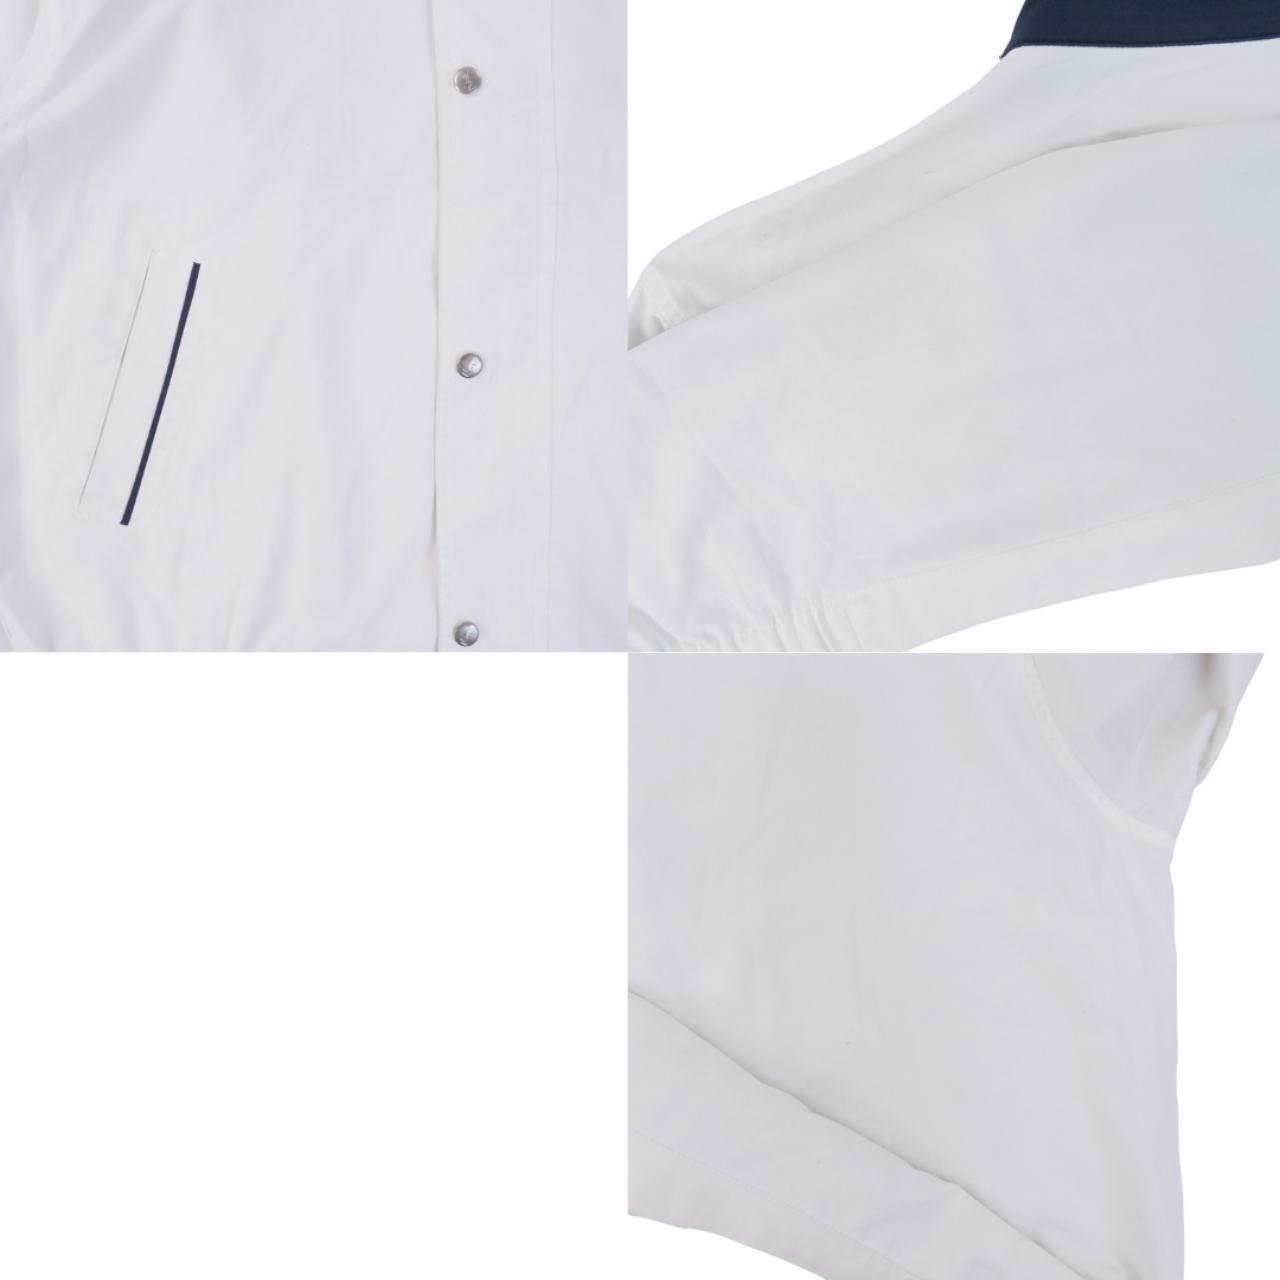 Vintage YSL Yves Saint Laurent Harrington Jacket Size L - Known Source